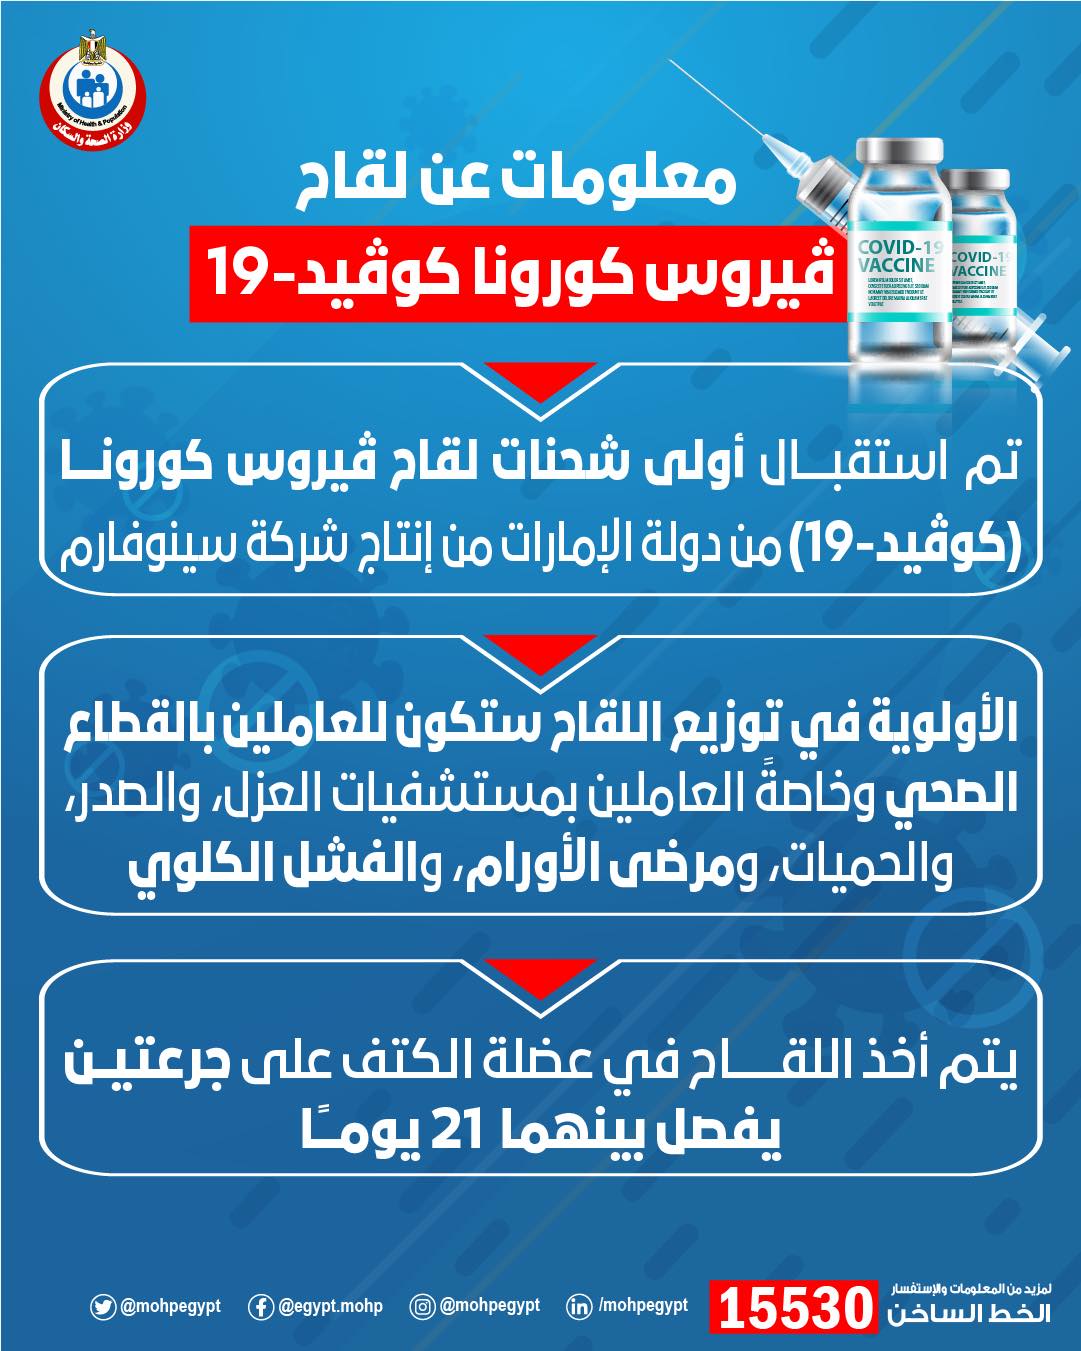 الصحة تعلن وصول أول دفعة لقاح كورونا لمصر وبدء التطعيم خلال ساعات و3 فئات الأولى بالتطعيم وكيفية تناوله 8